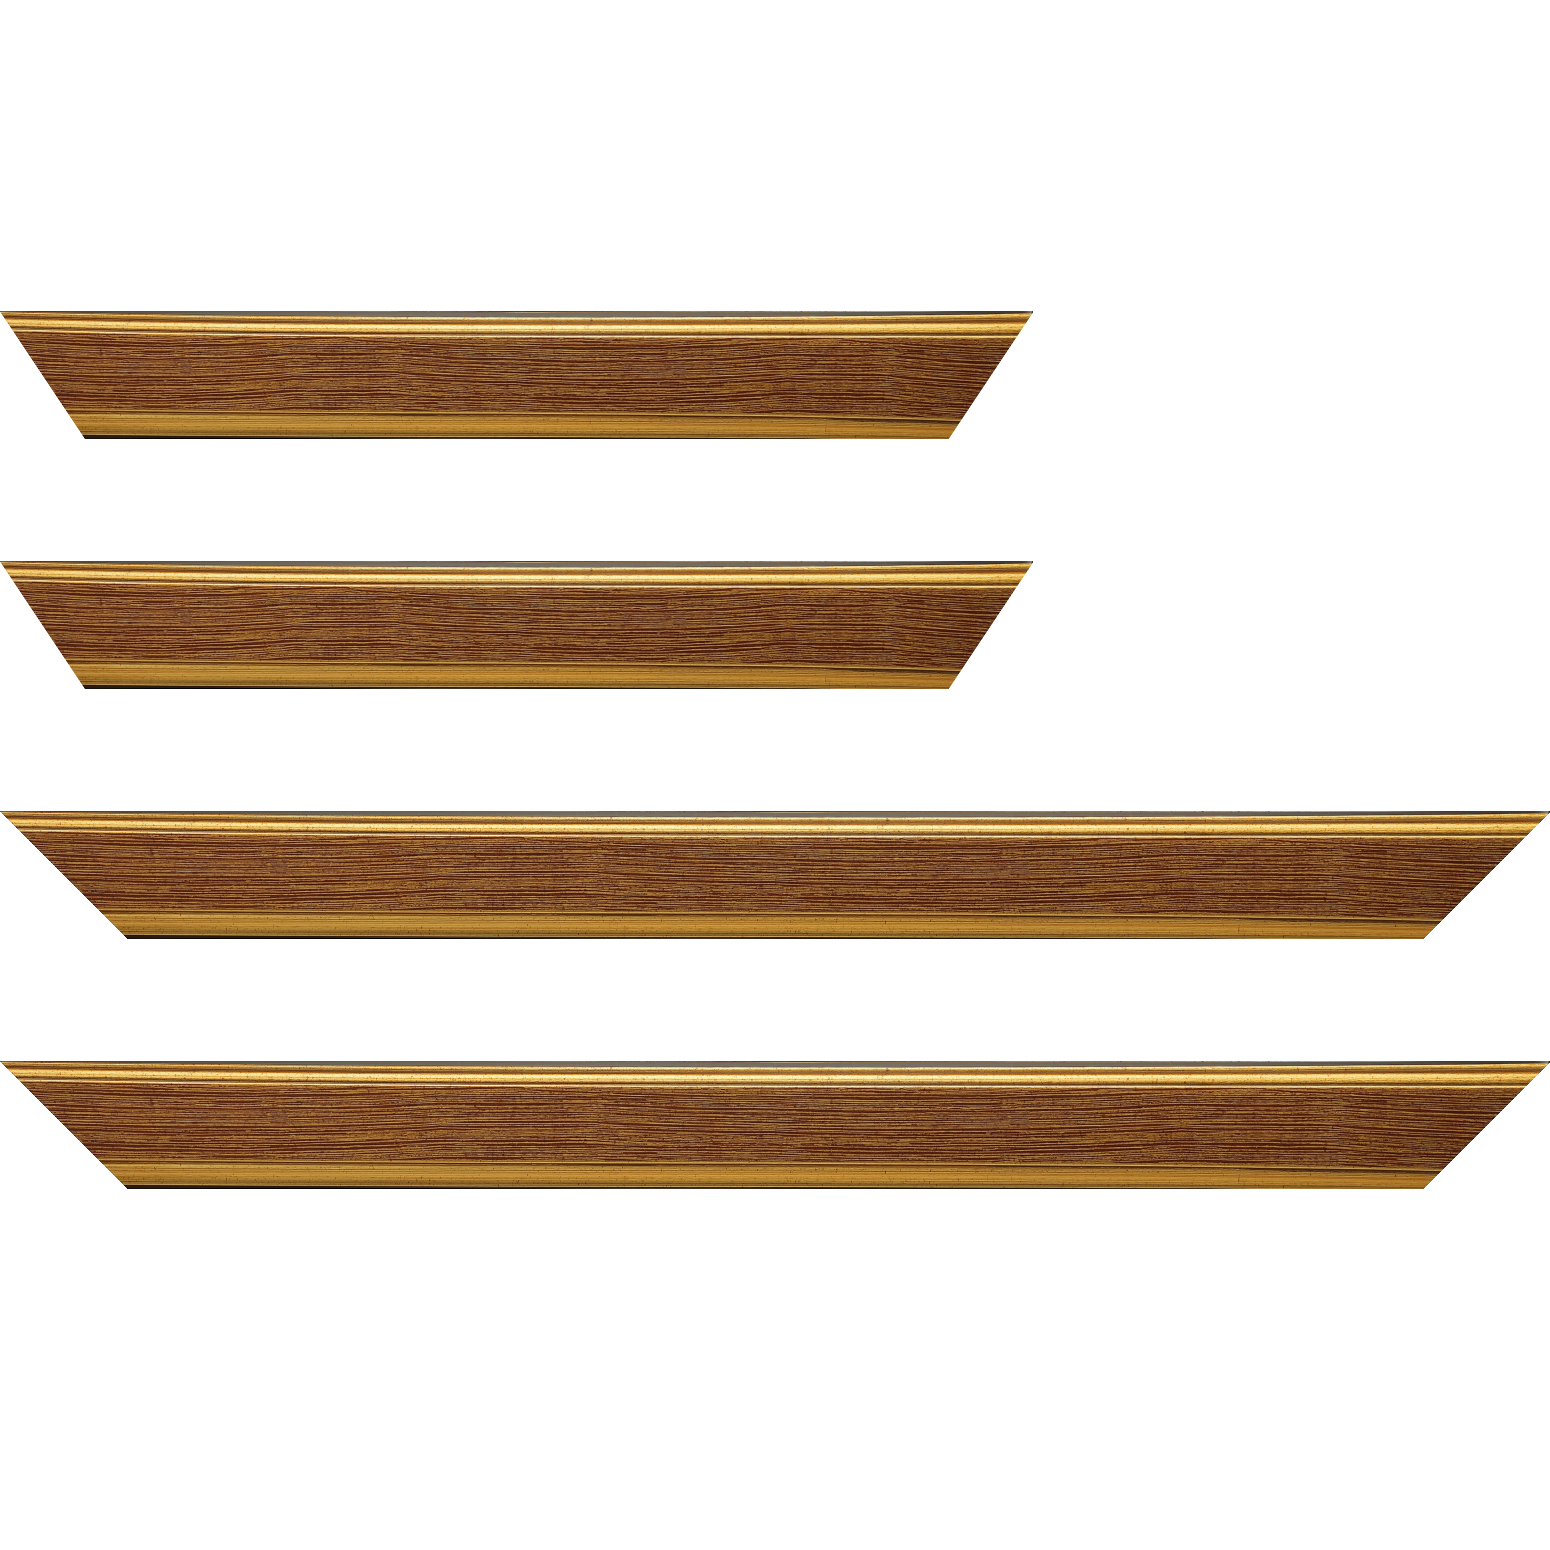 Baguette bois profil plat largeur 3.5cm couleur or fond bordeaux filet or - 25x25